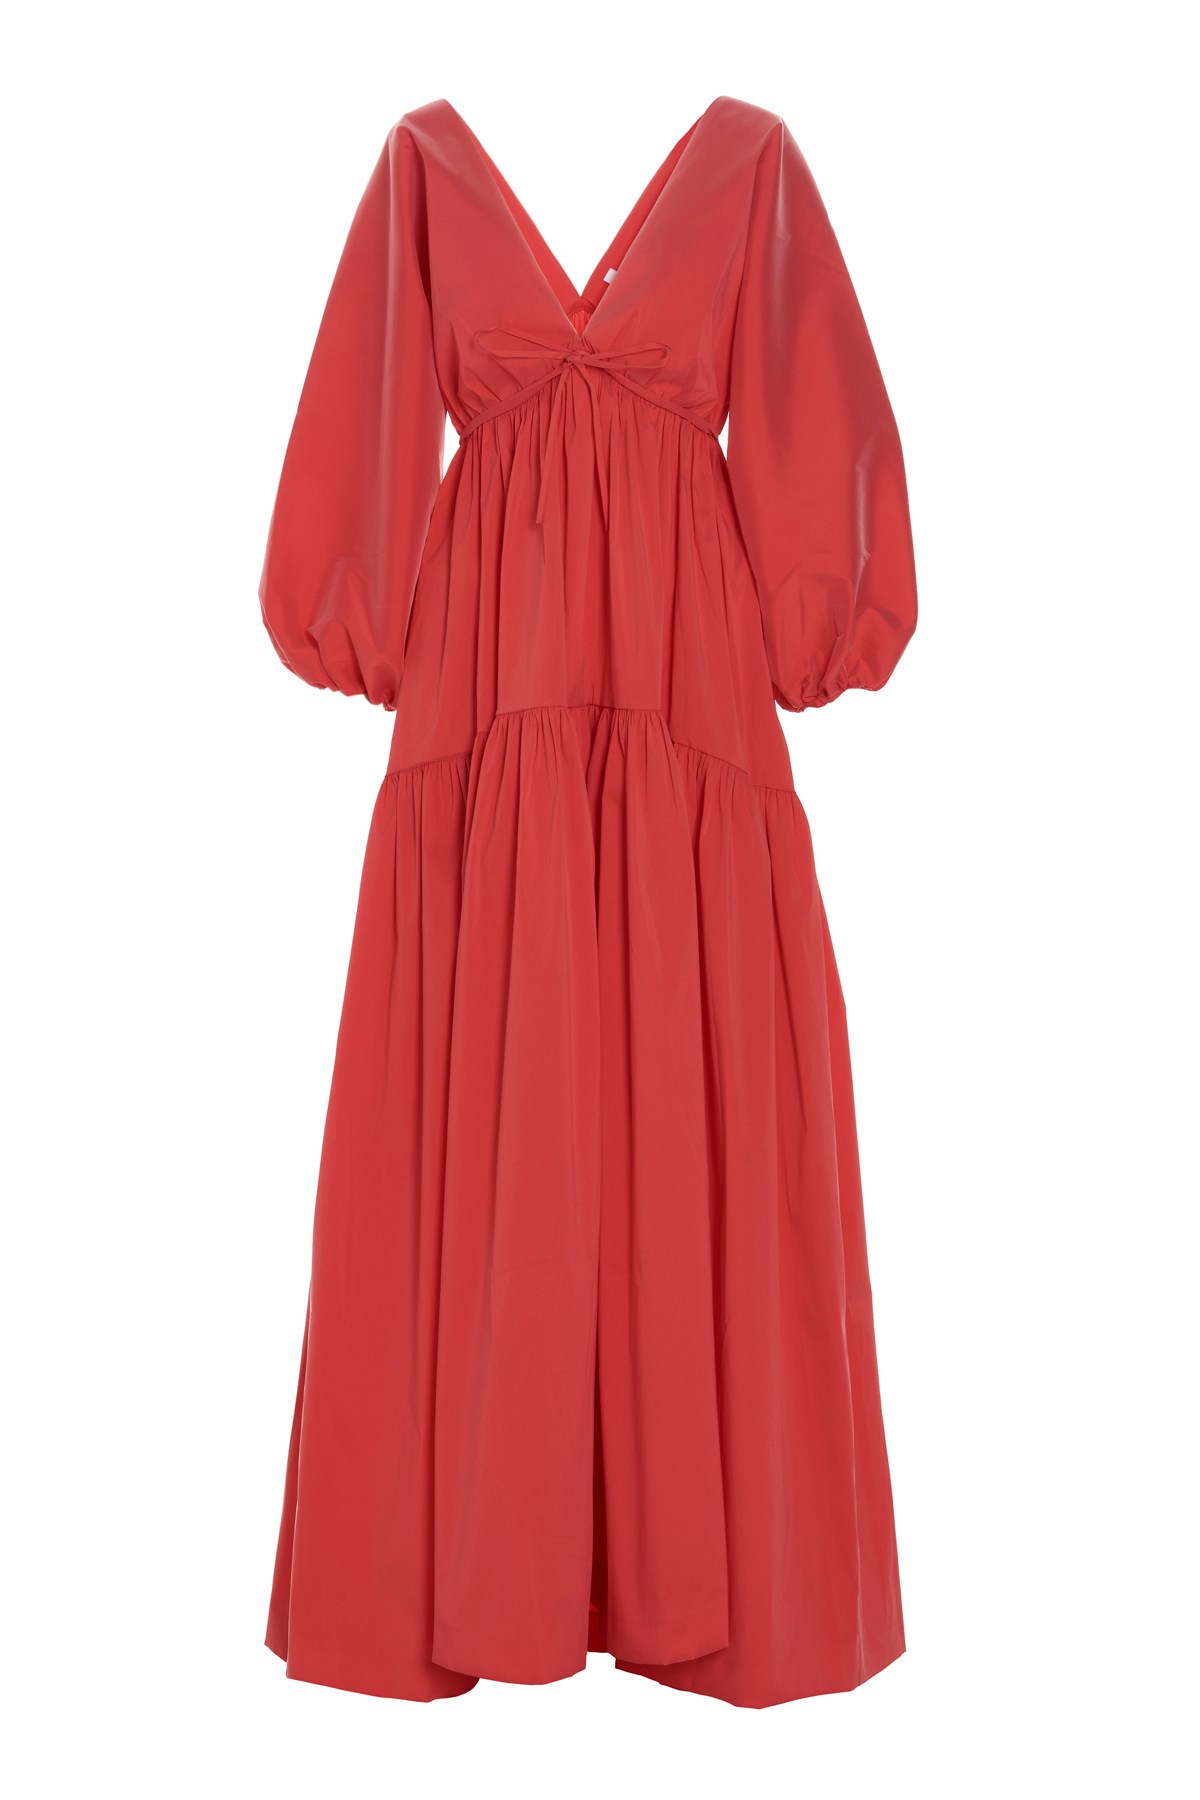 BERNADETTE 'Marlow’ Dress